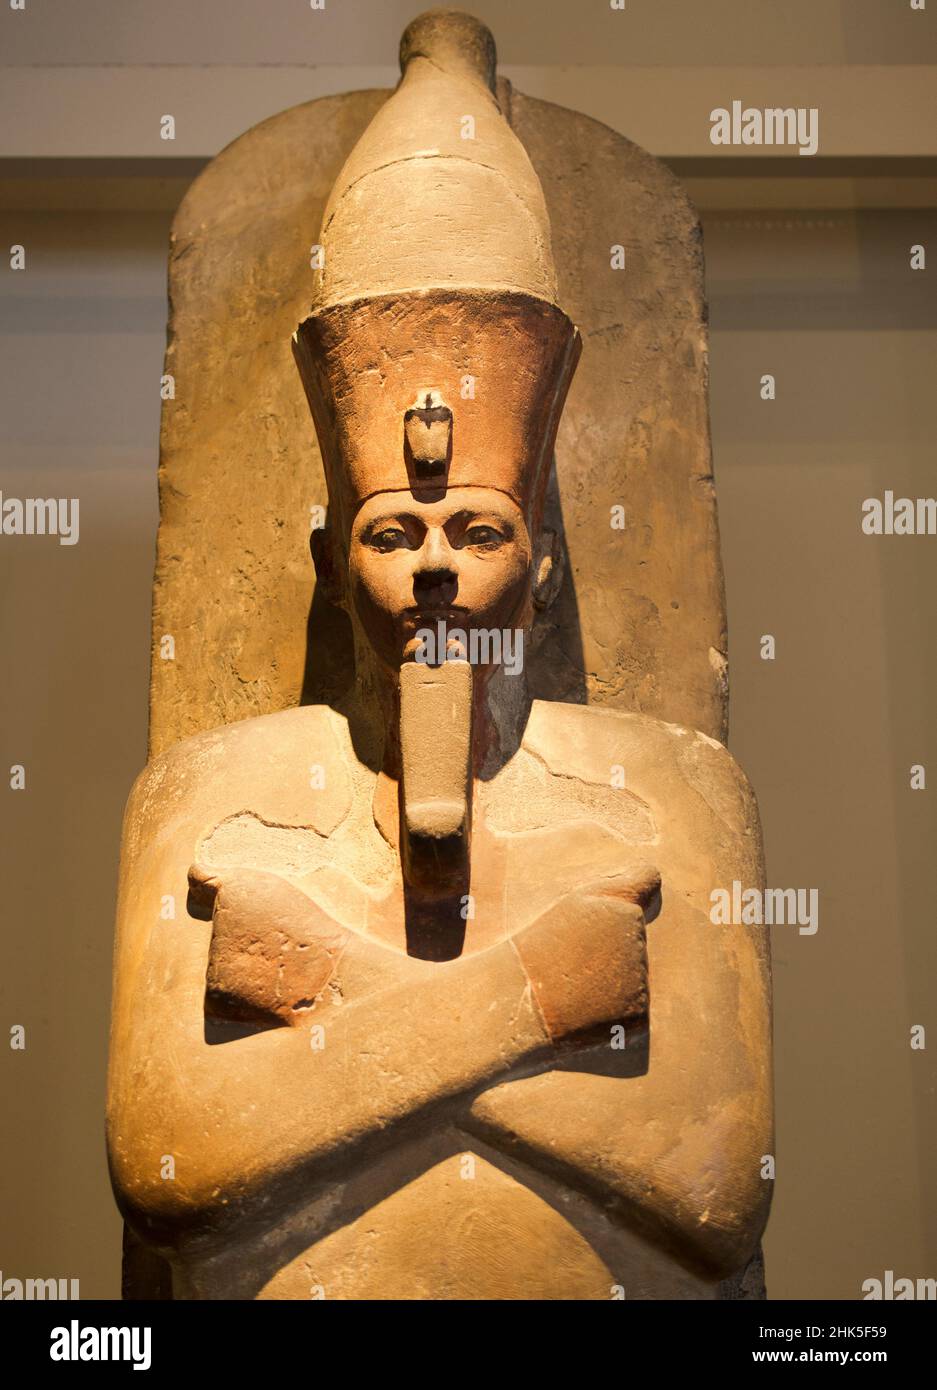 Amenhotep i fu il secondo faraone della dinastia d'Egitto del 18th, che regnò da circa 1526 a 1506 a.C. Fondato nel 1753, il British Museum Foto Stock